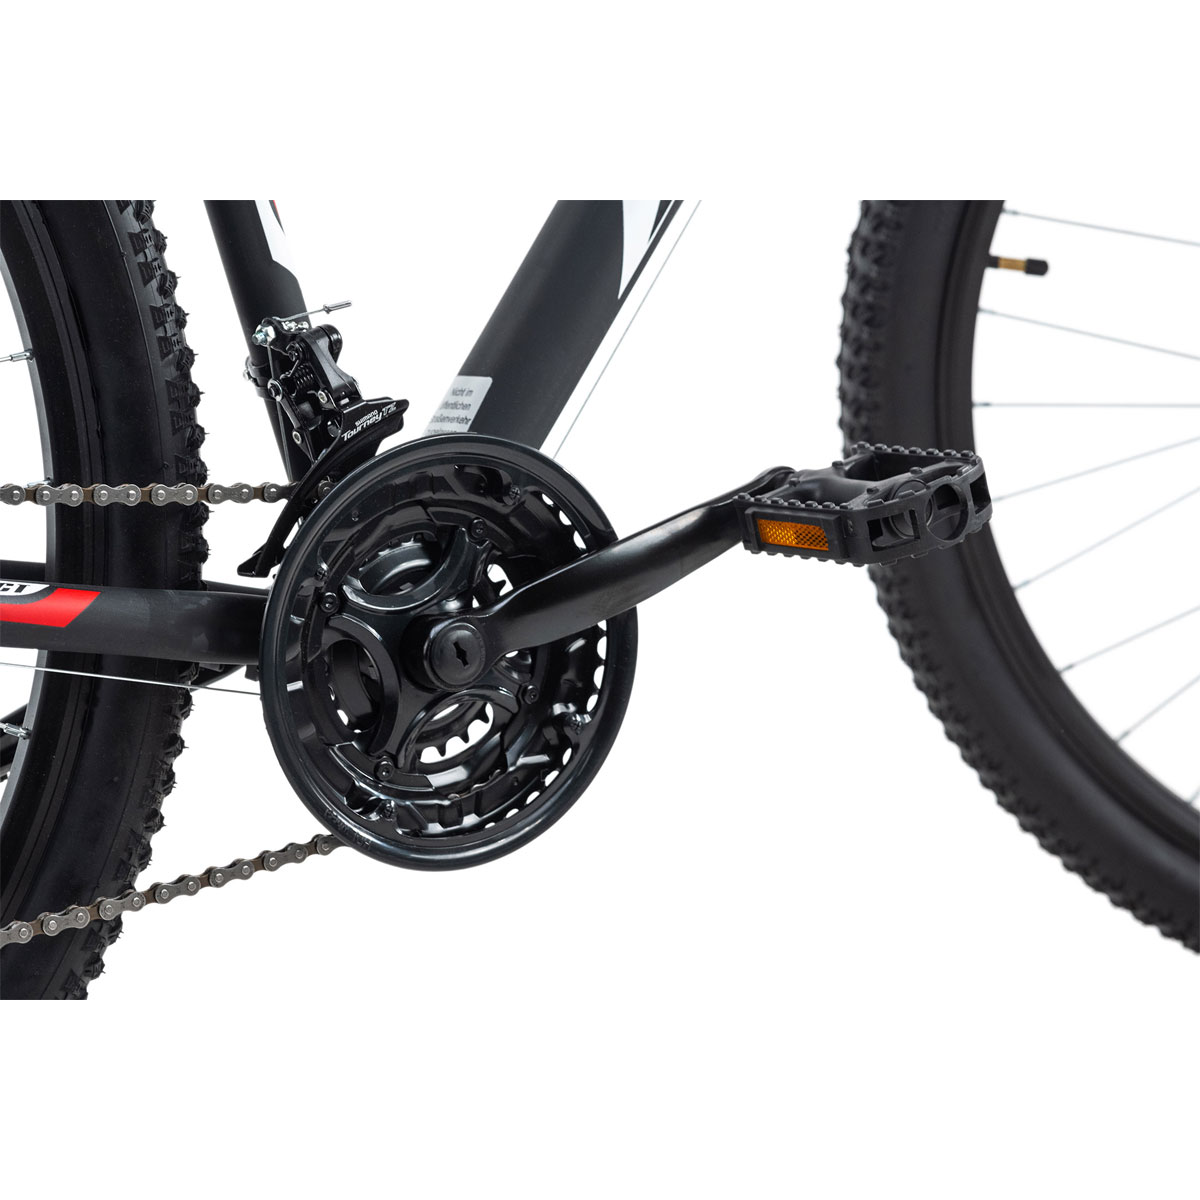 Mountainbike „Xtinct“, Hardtail, 29 Zoll, 50 cm, schwarz-rot